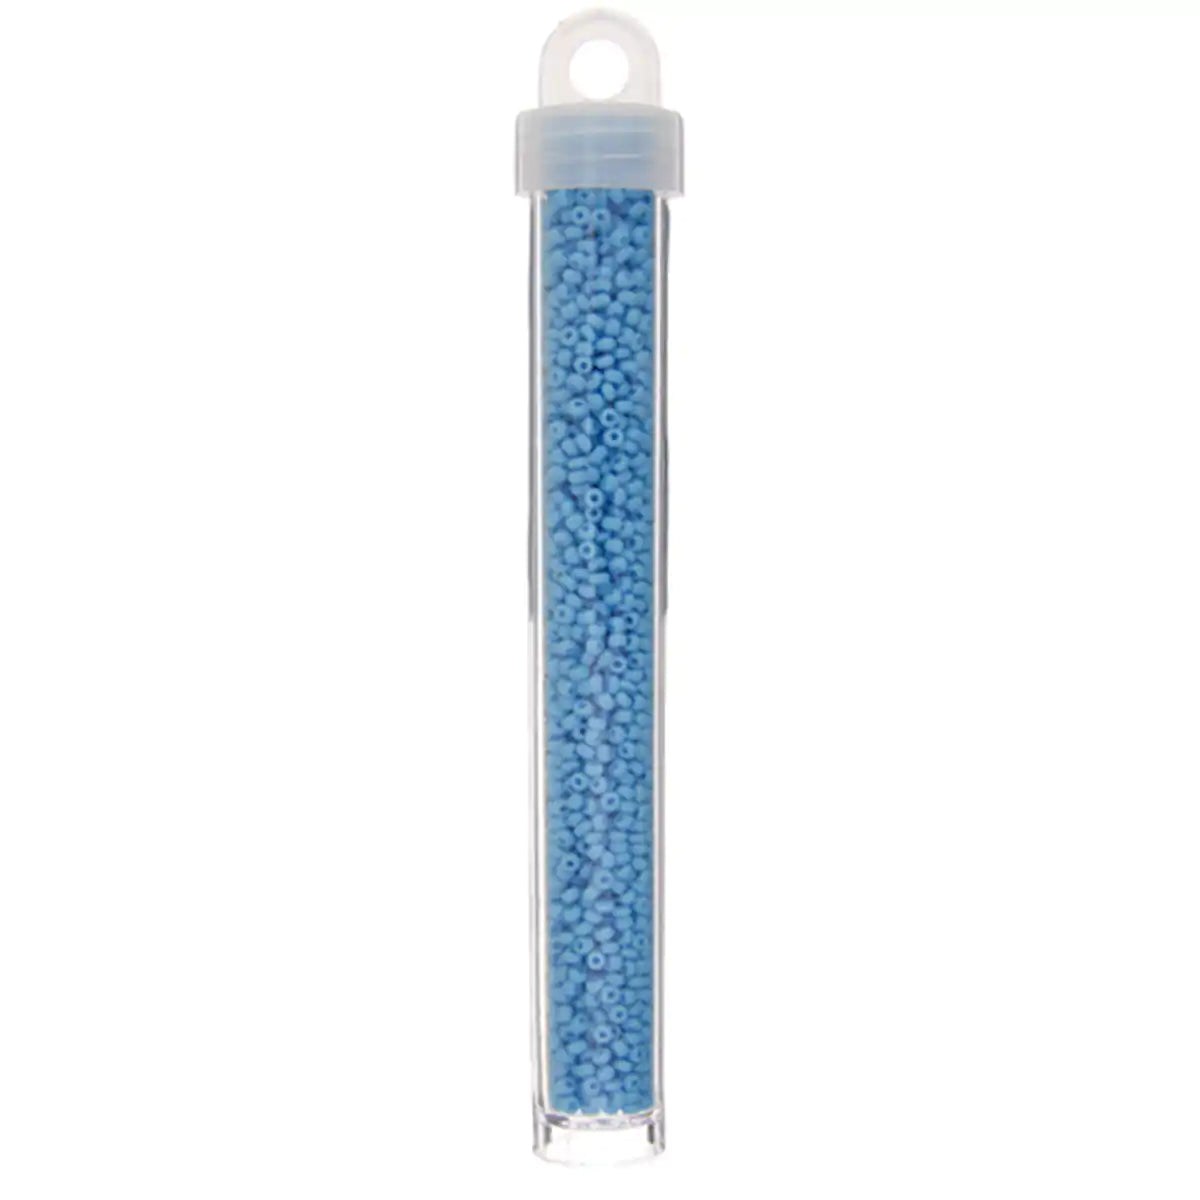 Miyuki seed beads light blue size 10